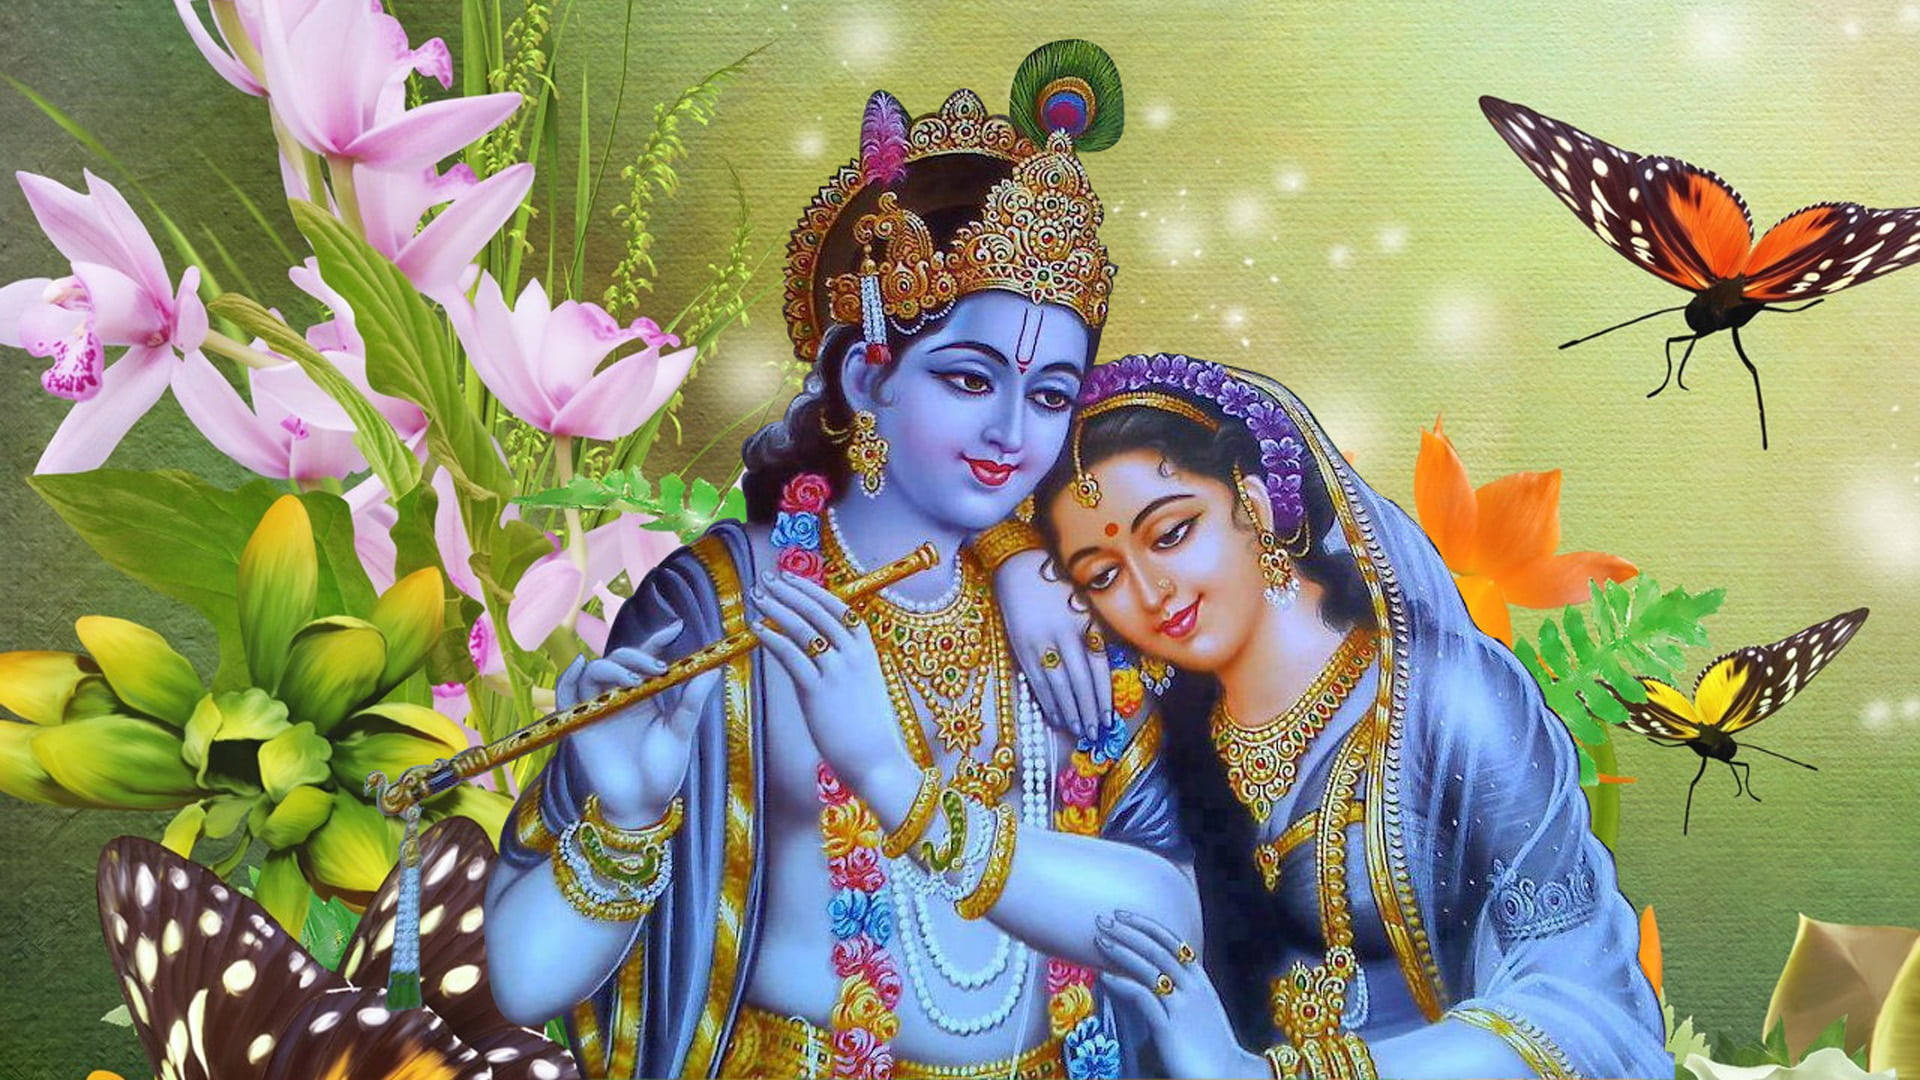 Free Radha Krishna 3d Wallpaper Downloads, [100+] Radha Krishna 3d  Wallpapers for FREE 